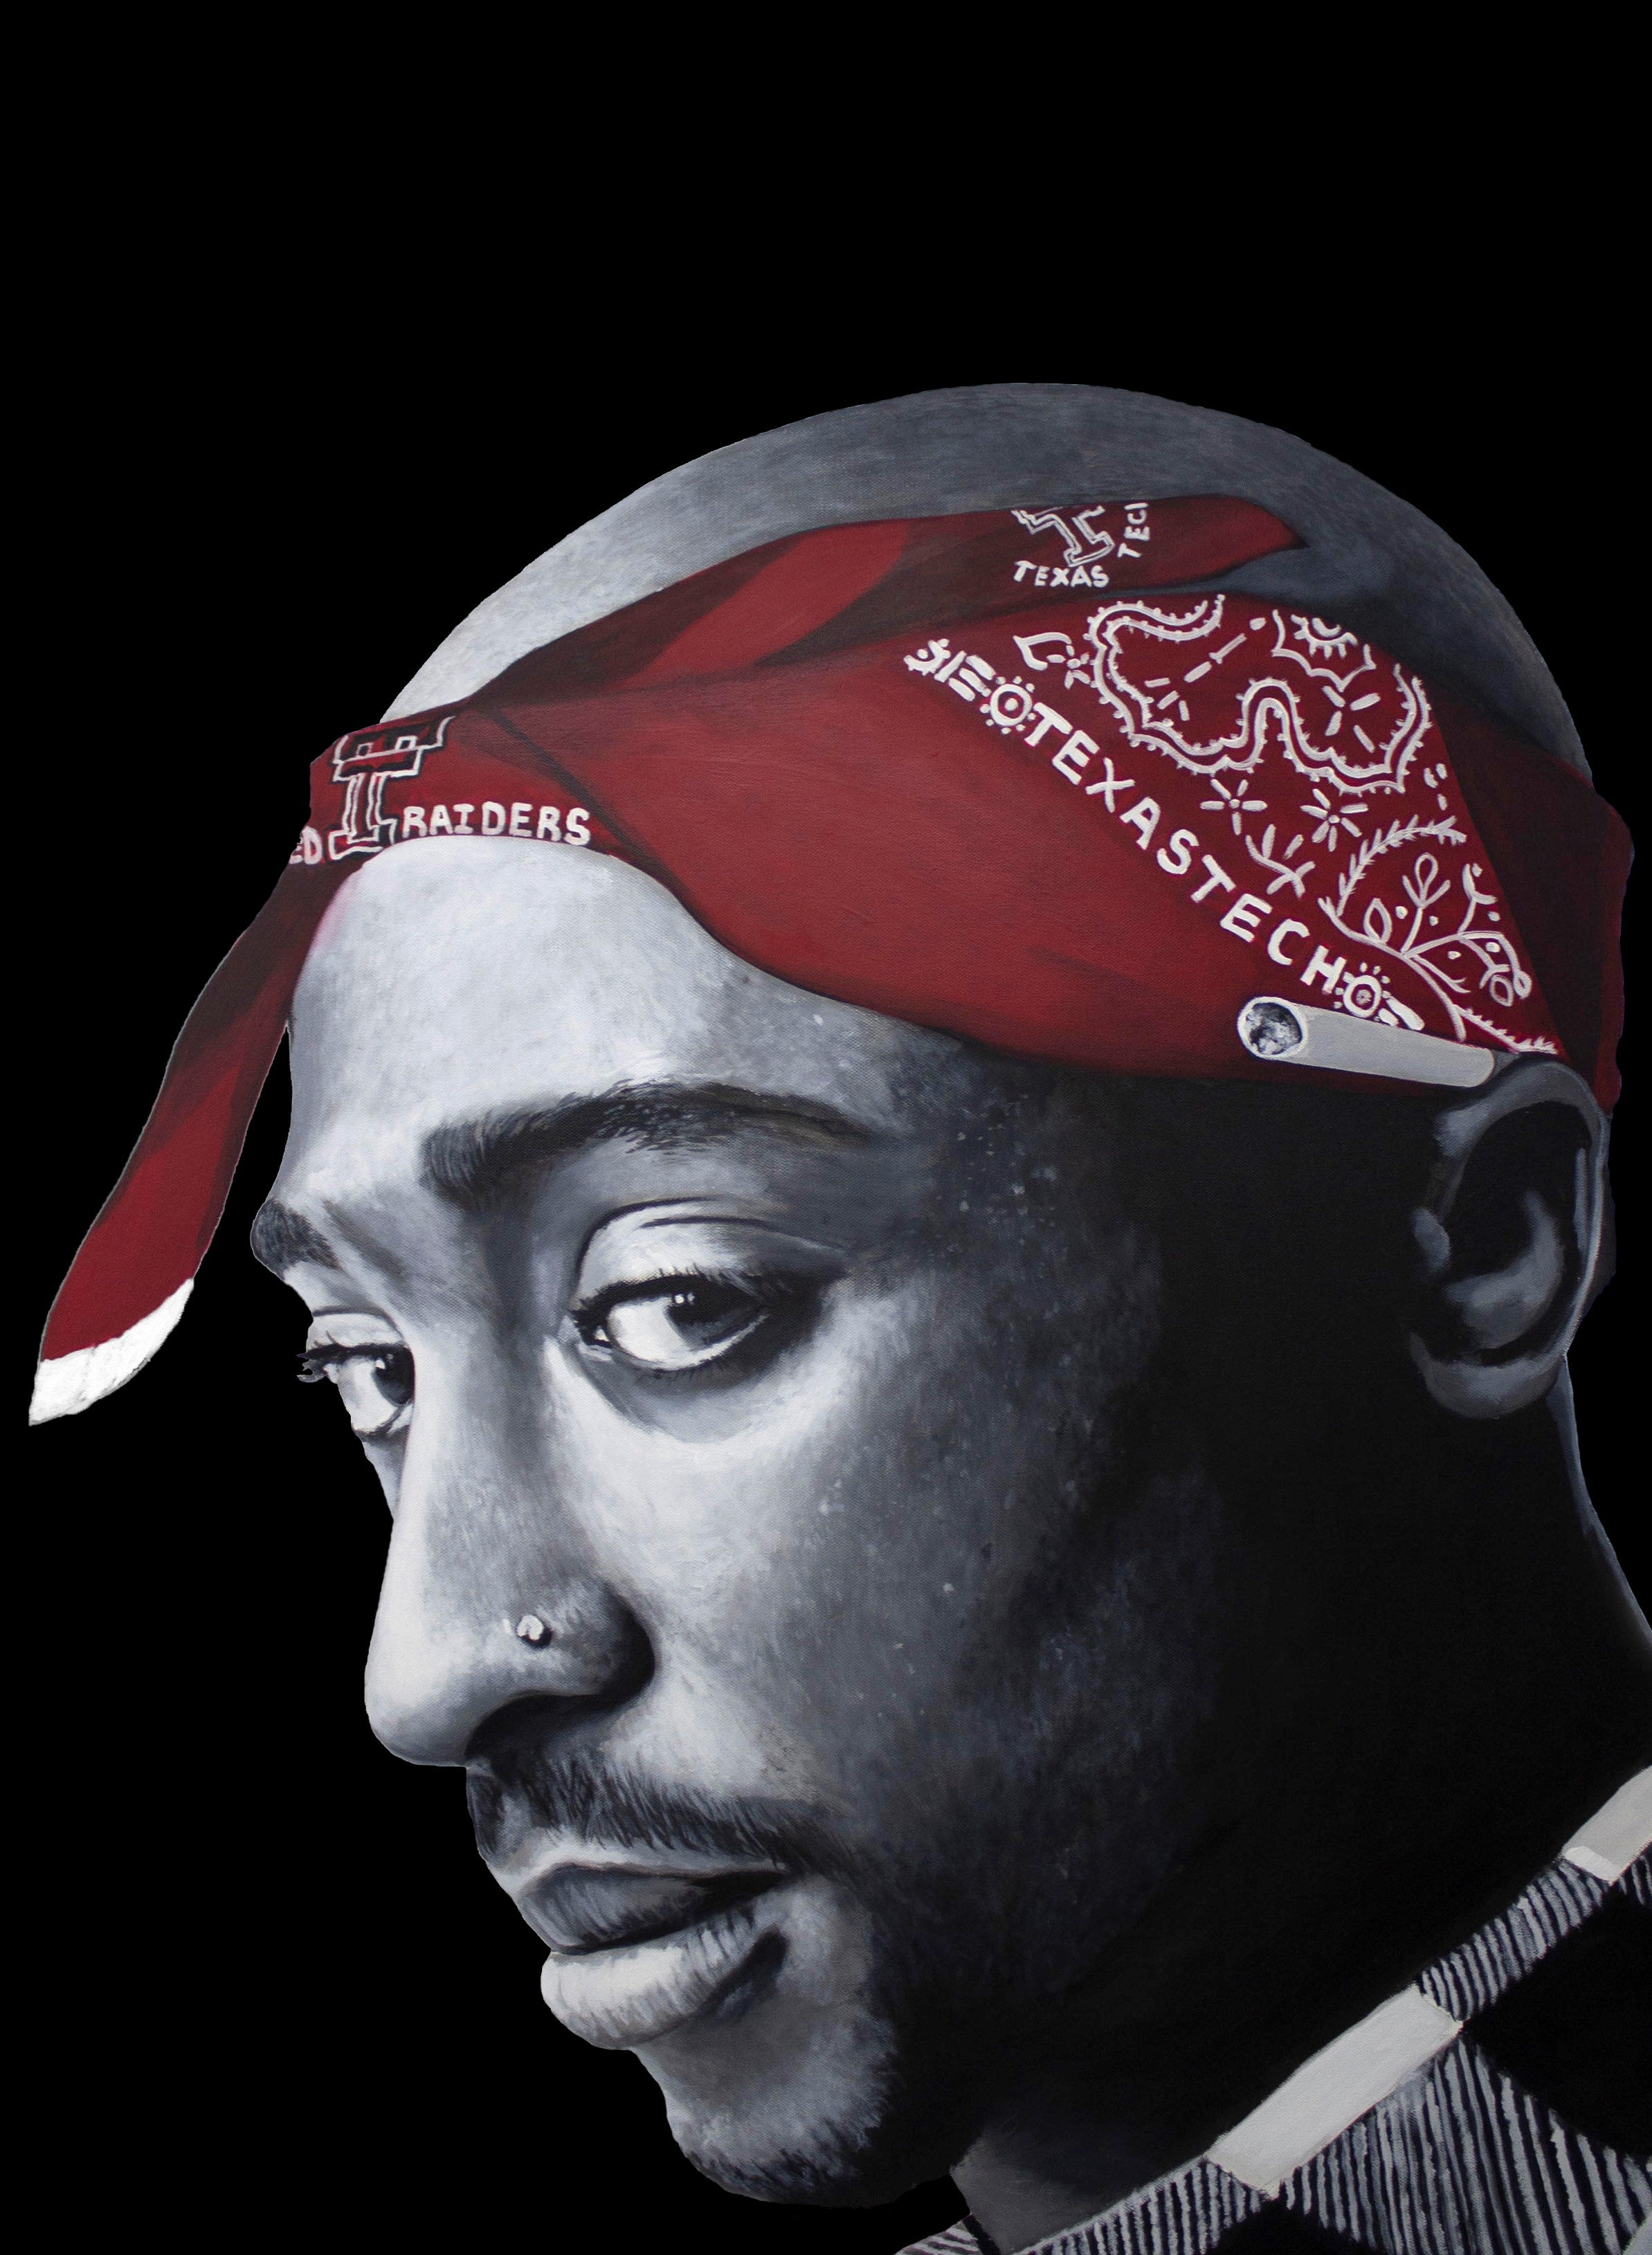 Bức tranh Tupac của David Grizzle Art là một tác phẩm nghệ thuật đầy tầm cỡ. Từng chi tiết được vẽ và hoàn thiện với tình cảm đặc biệt, bức tranh mang đến sự thăng hoa tinh thần và cảm nhận sự xuất sắc của huyền thoại Tupac Shakur. Hãy tìm hiểu và khám phá thêm về tác phẩm này!